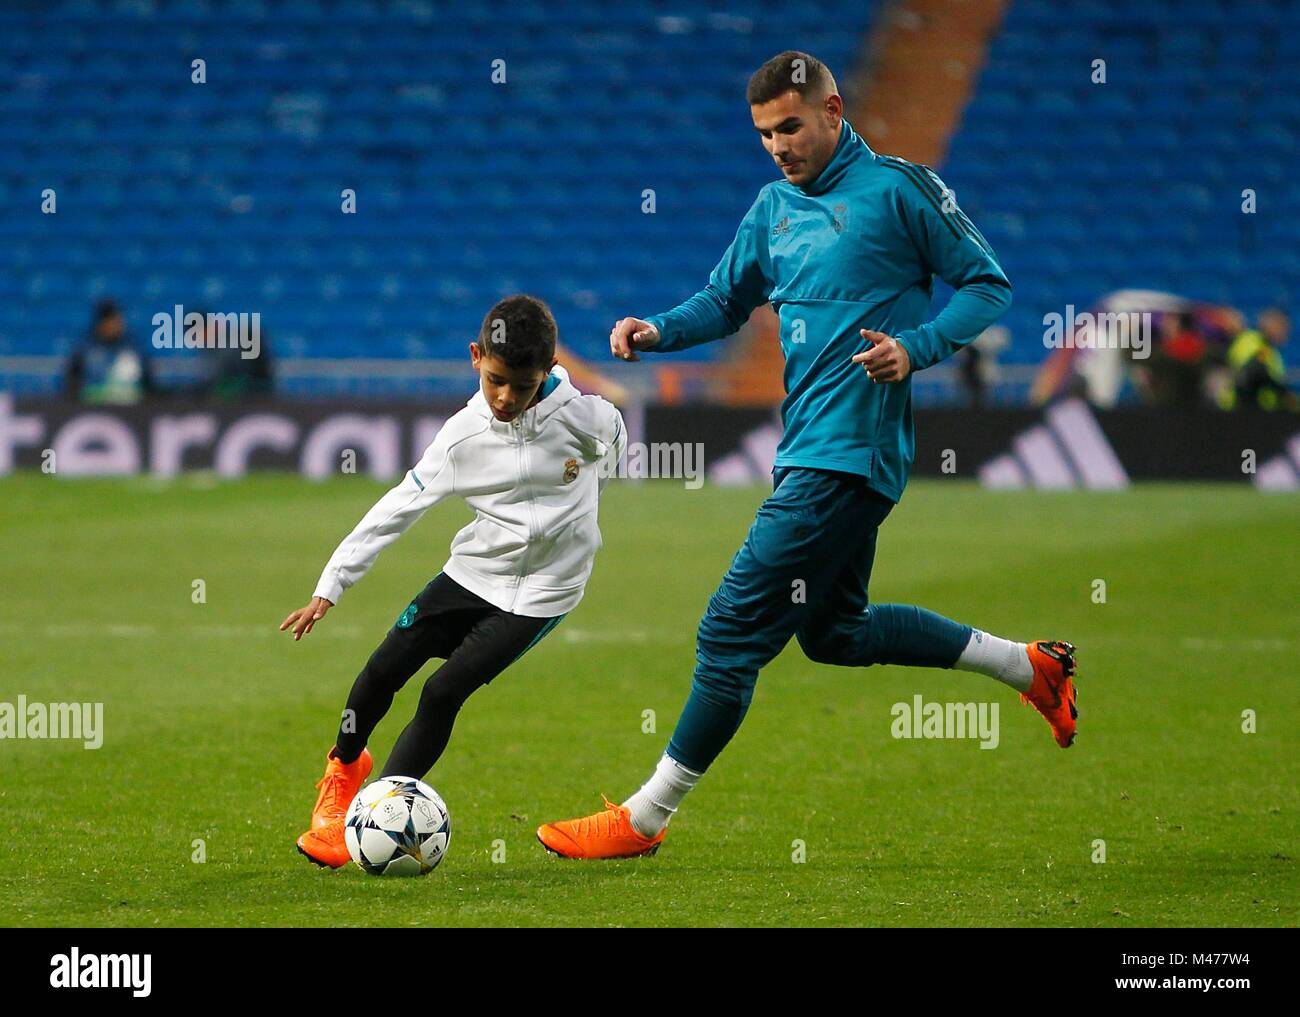 Niño interrumpe partido para abrazar a Cristiano Ronaldo - El Sol